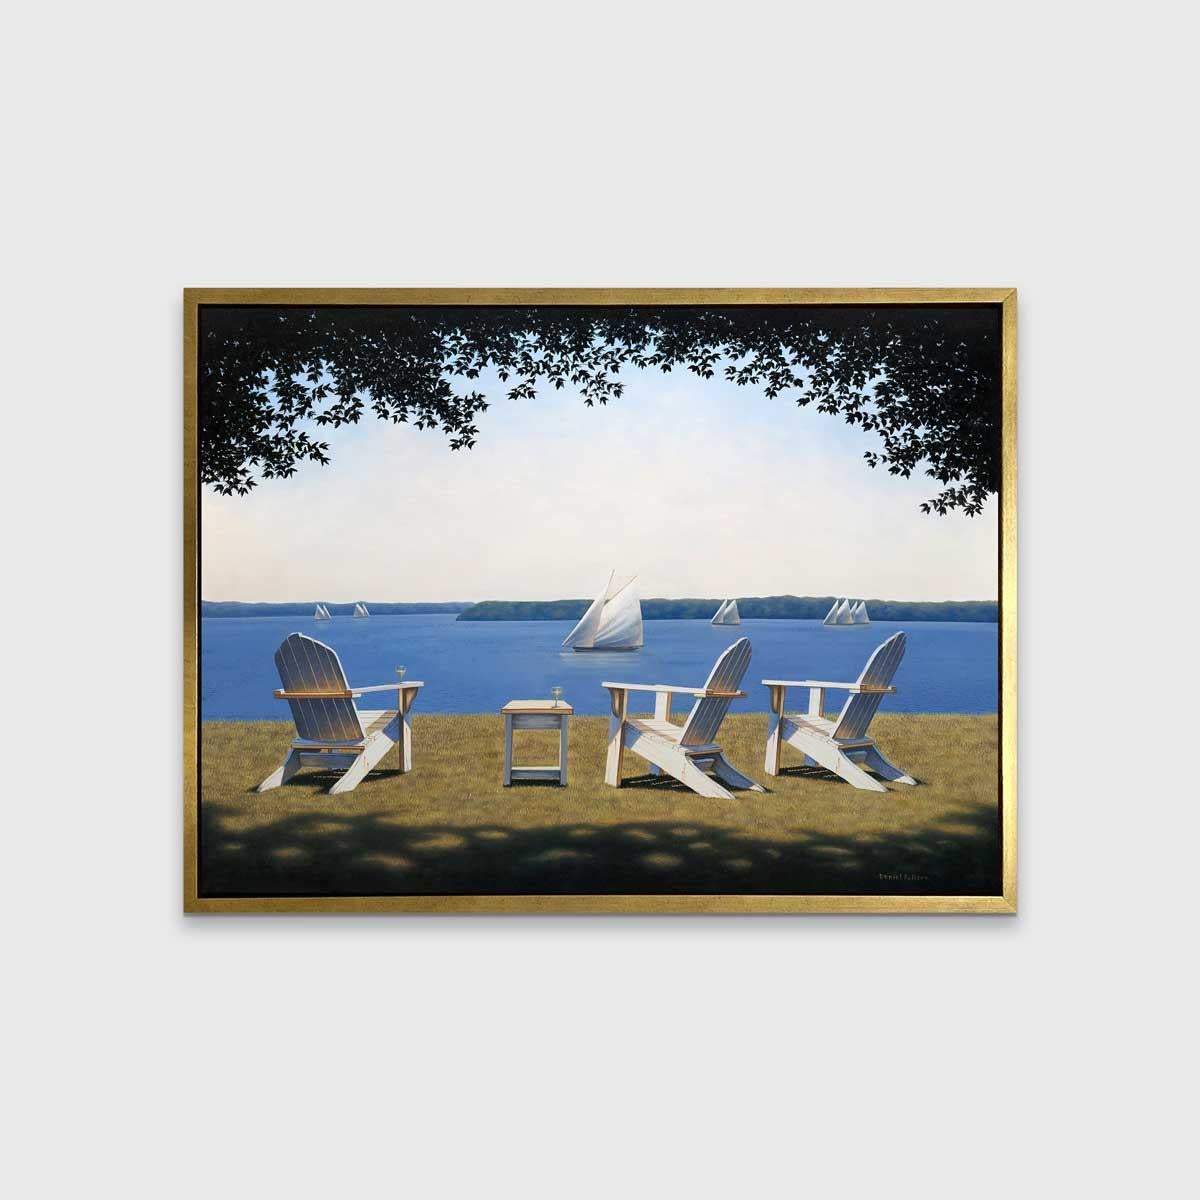 „Afternoon Seating“, gerahmter Giclee-Druck in limitierter Auflage, 36 Zoll x 48 Zoll (Grau), Landscape Print, von Daniel Pollera